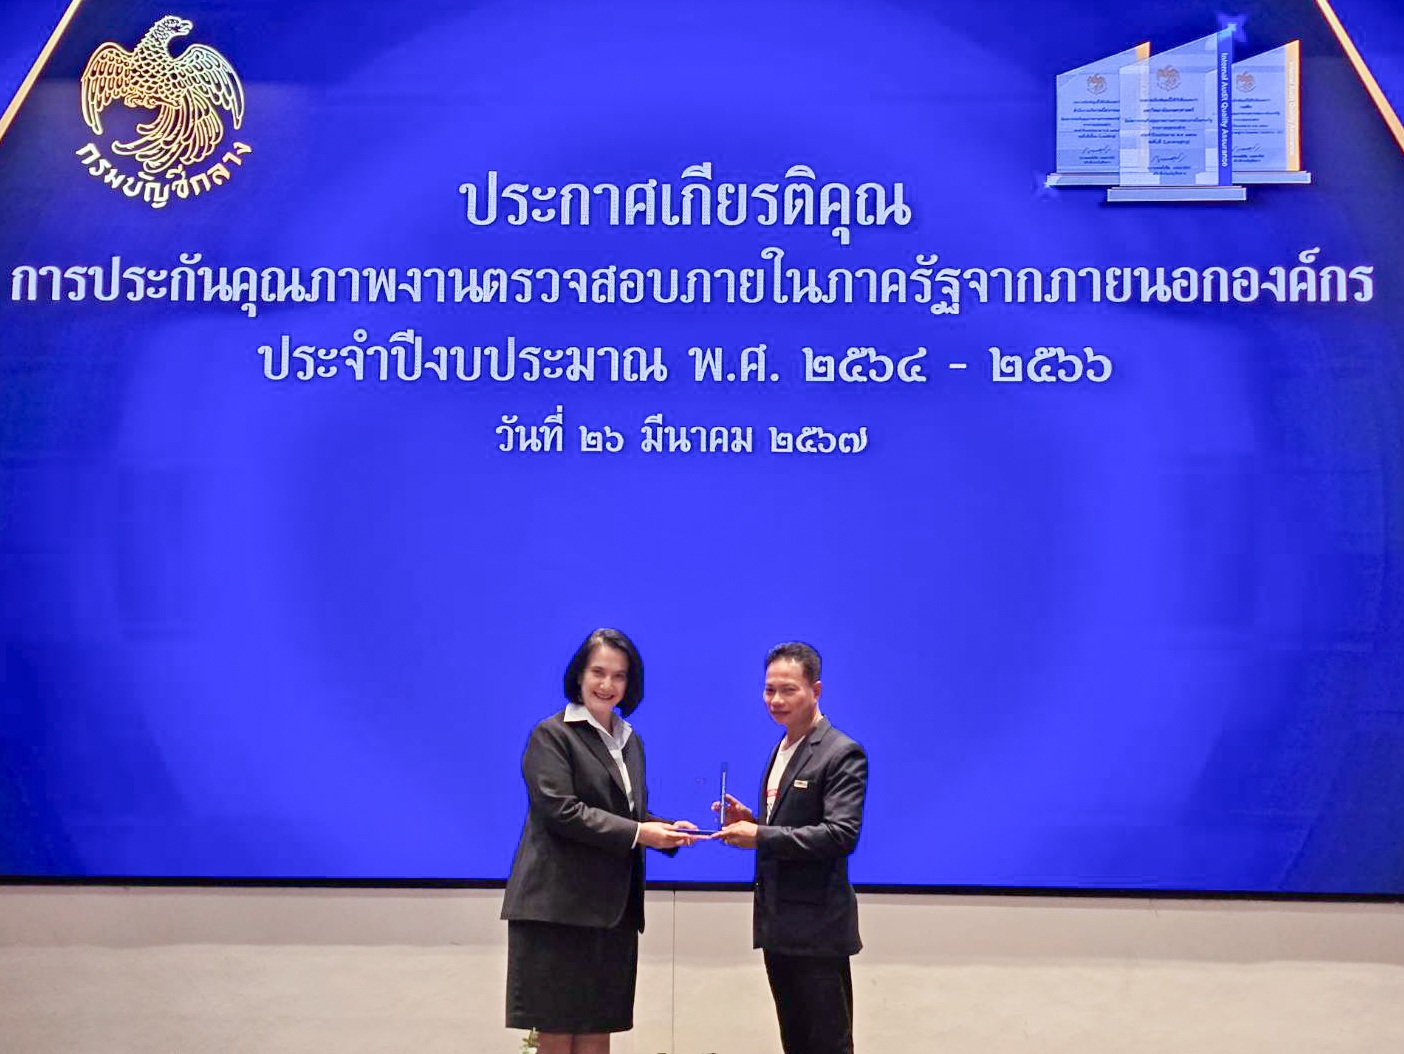 ไปรษณีย์ไทย ได้รับประกาศเกียรติคุณการประกันคุณภาพงานตรวจสอบภายในภาครัฐ ประจำปีงบประมาณ พ.ศ. 2564 - 2566